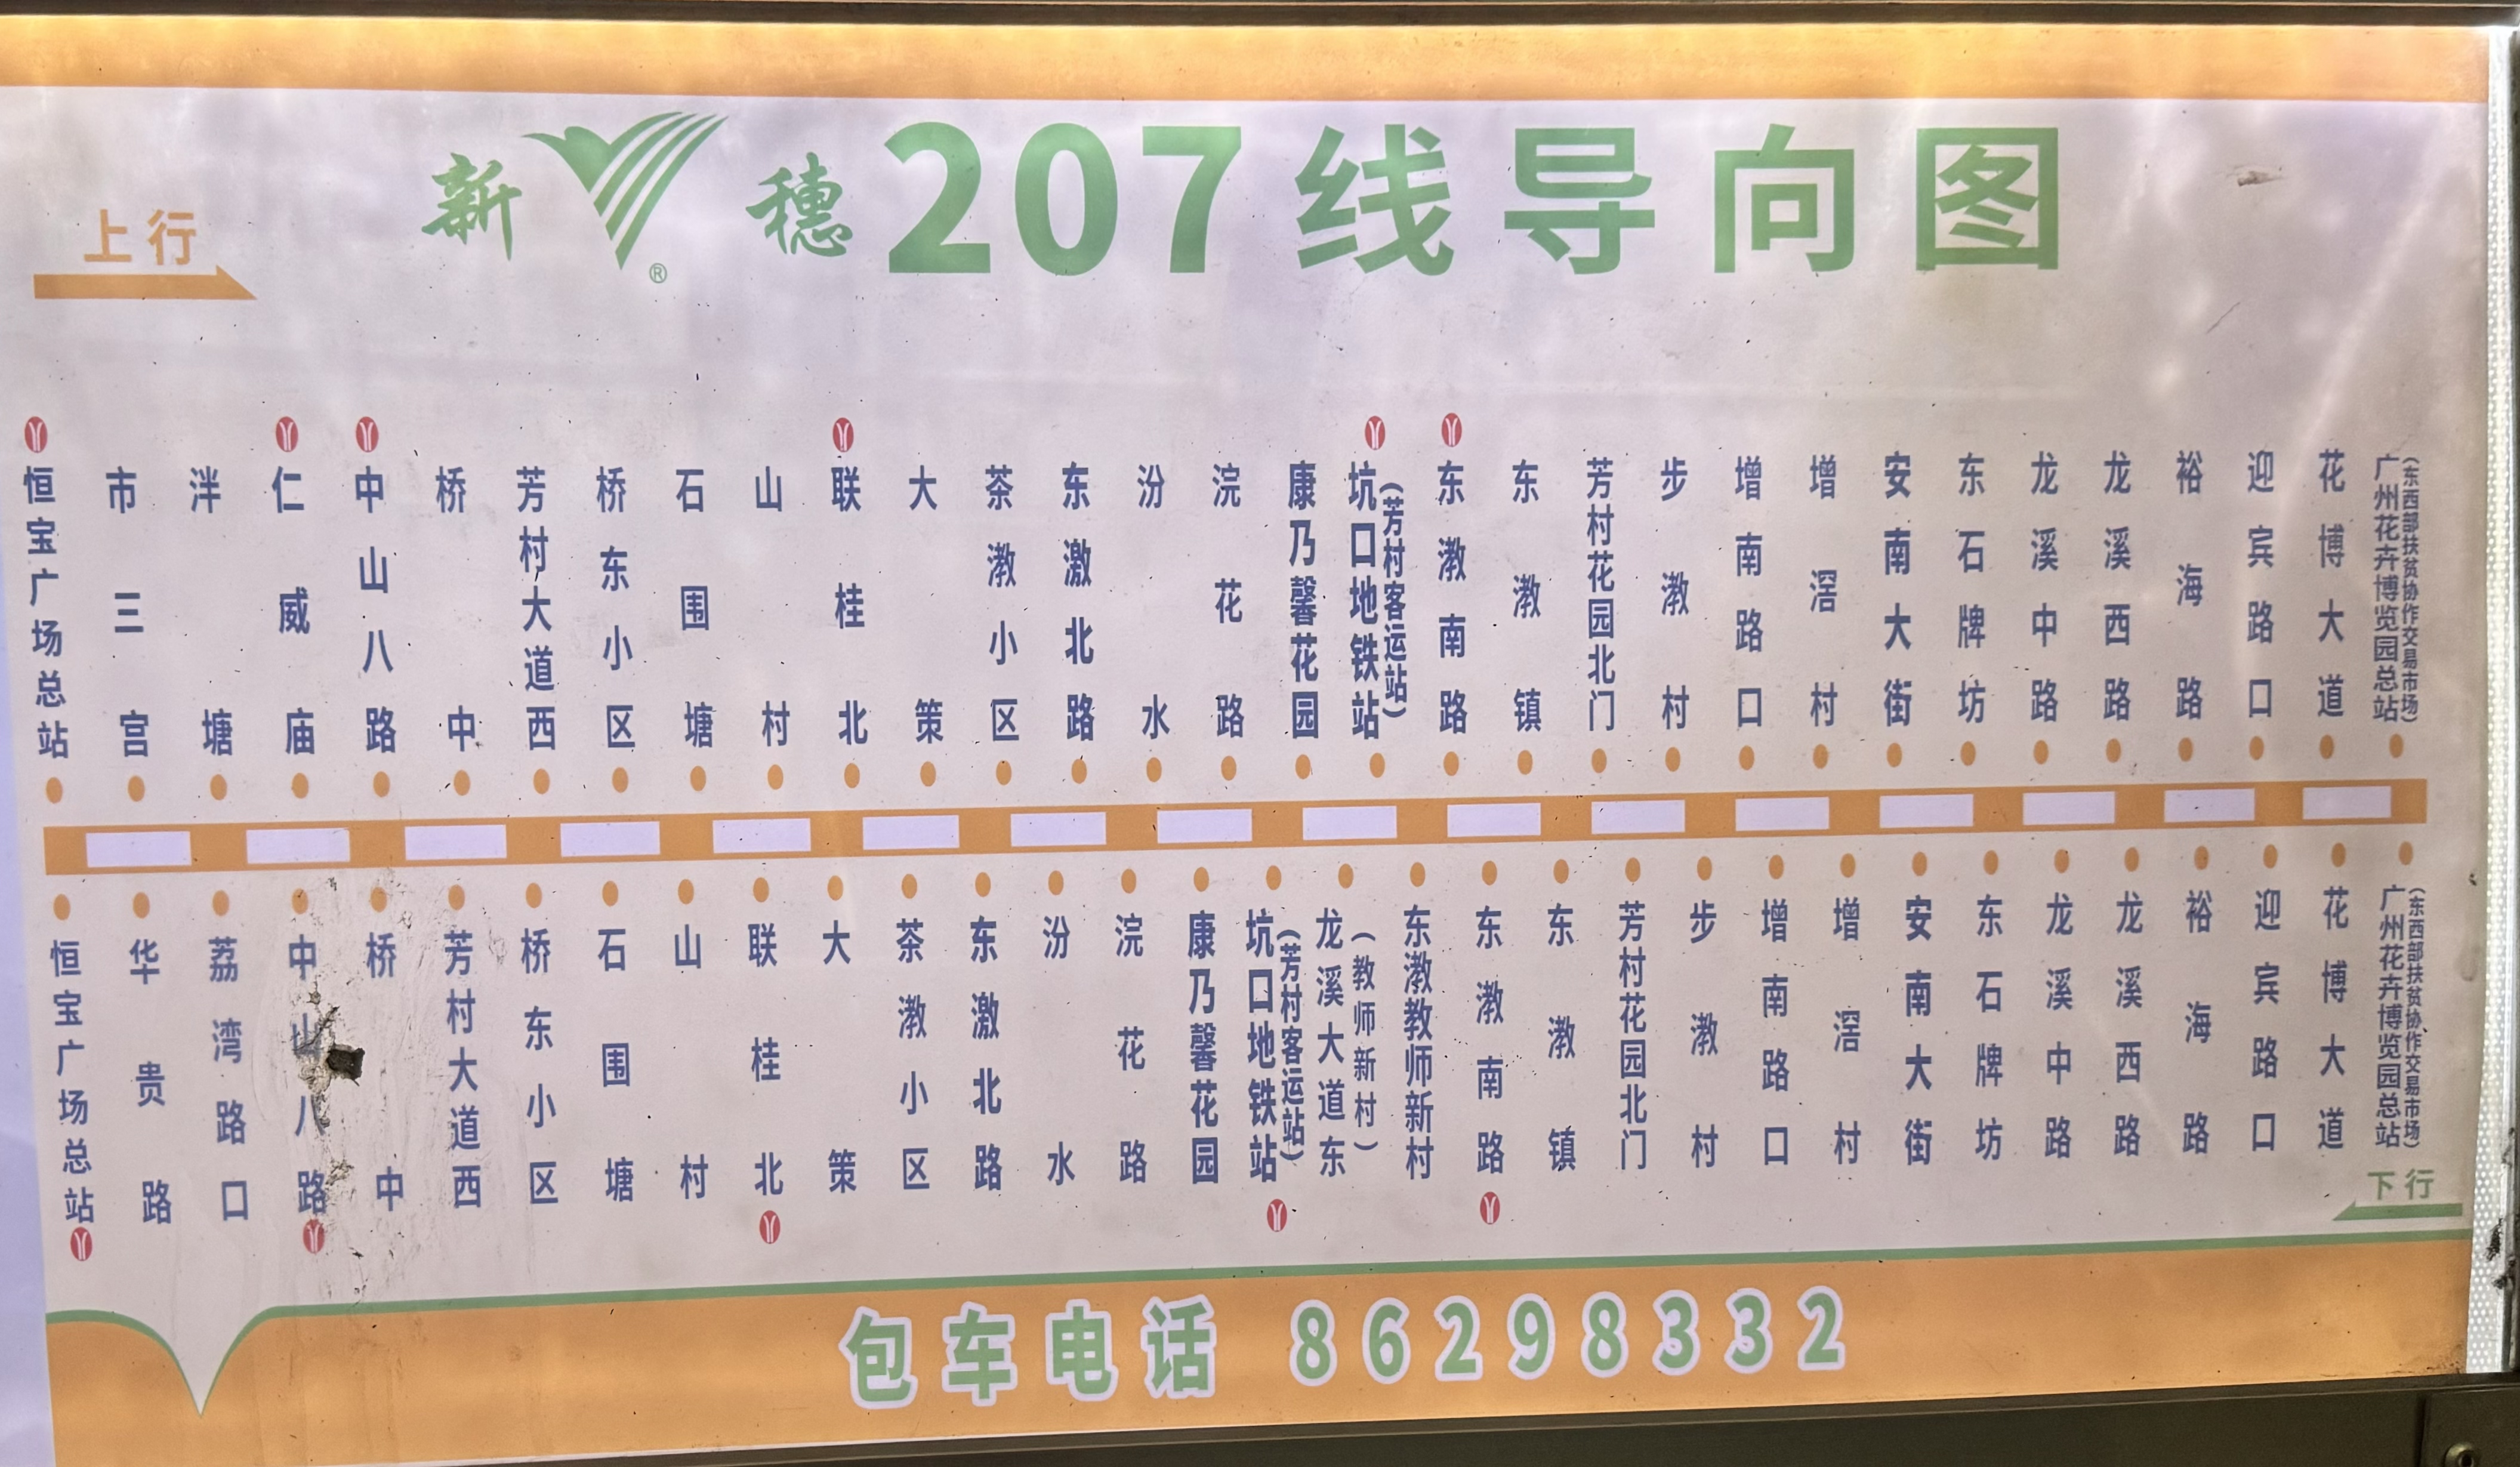 广州207路公交车路线